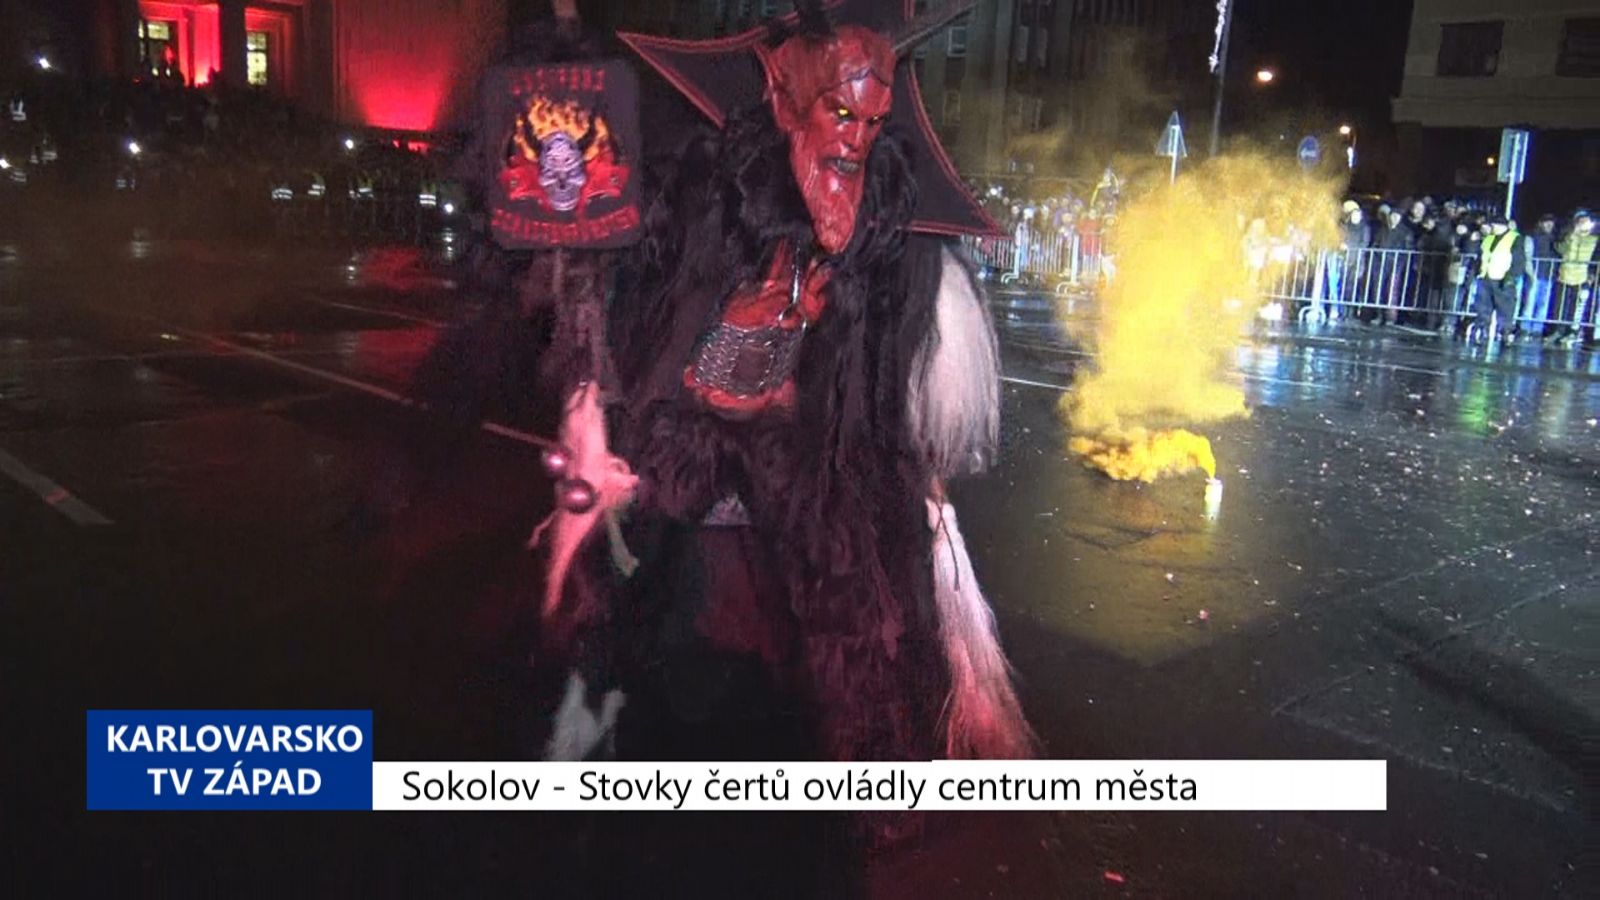 Sokolov: Stovky čertů ovládly centrum města (TV Západ)